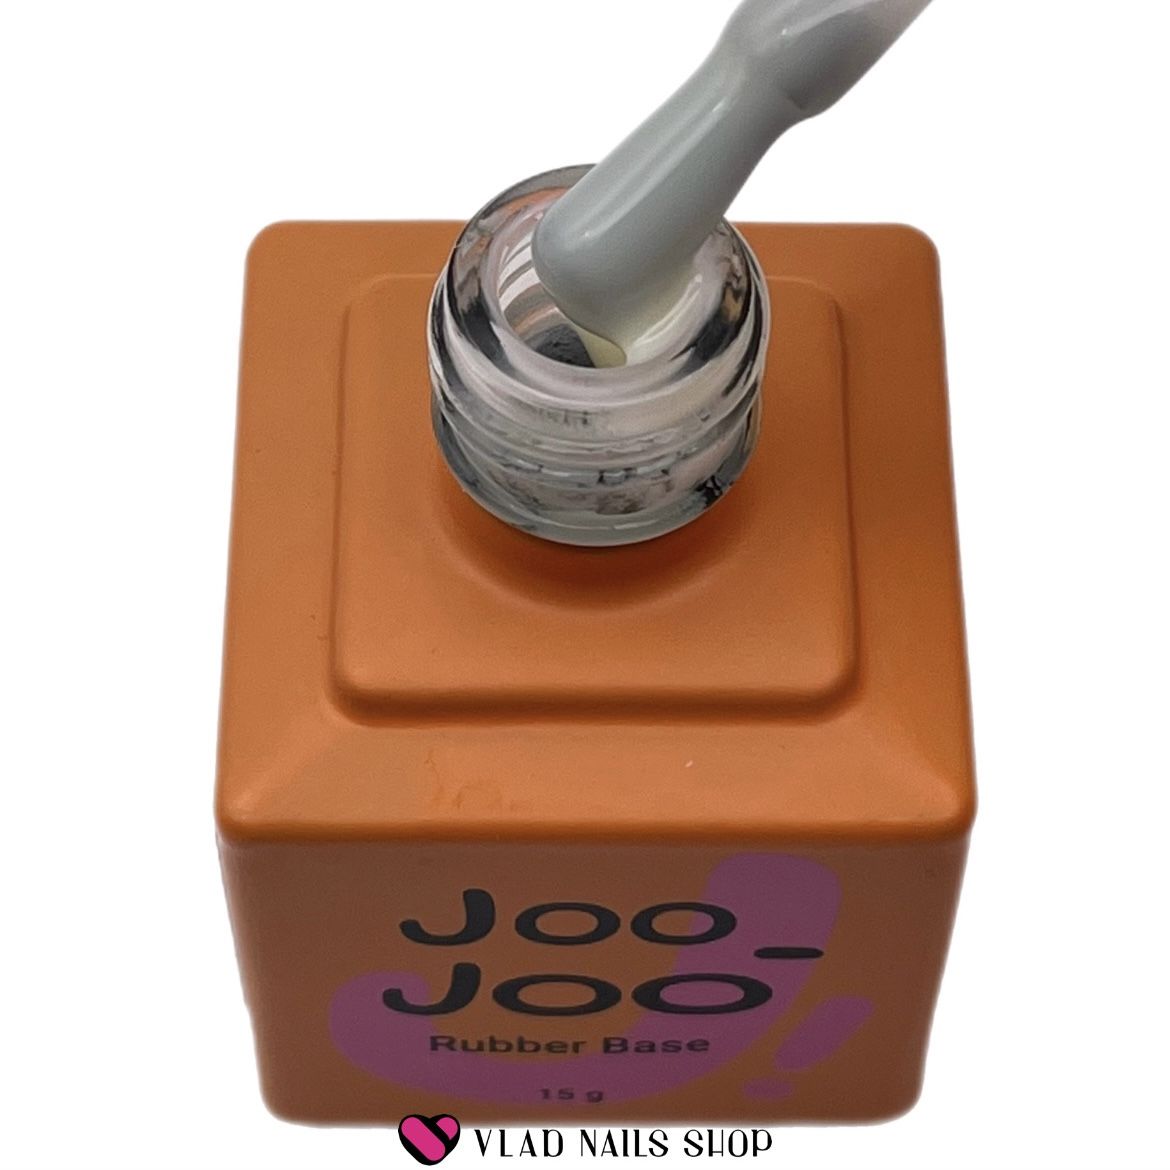 База JOO-JOO камуфлирующая Rubber Base Sufle №07 15г